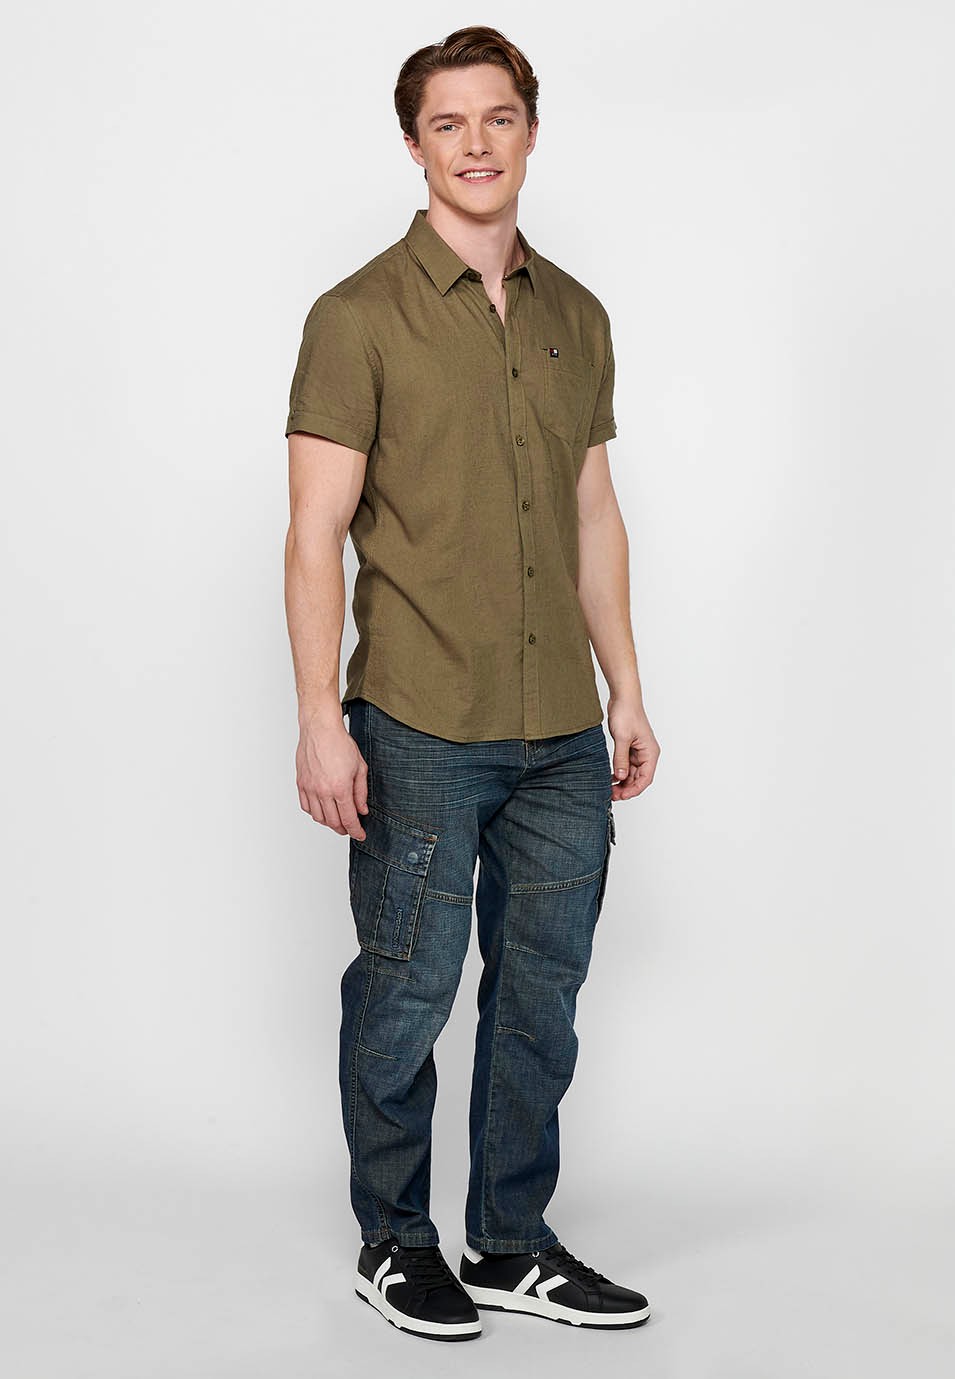 Short Sleeve Linen Shirt, khaki color, for men 1